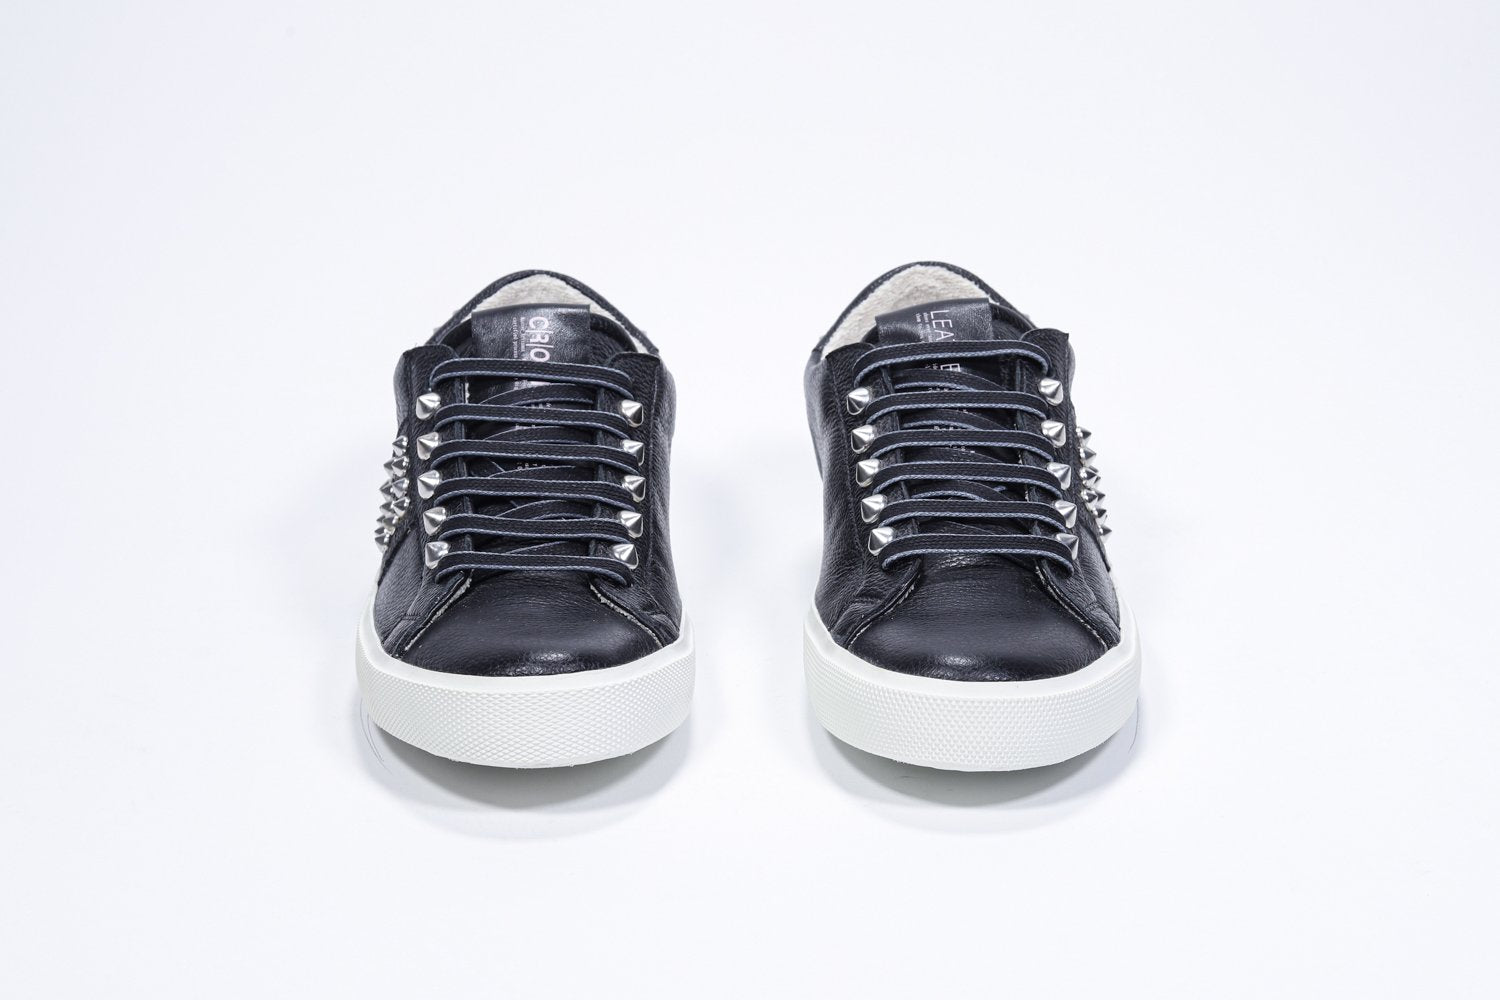 Vorderansicht des schwarzen Low Top sneaker. Obermaterial aus Vollleder mit Nieten und weißer Gummisohle.